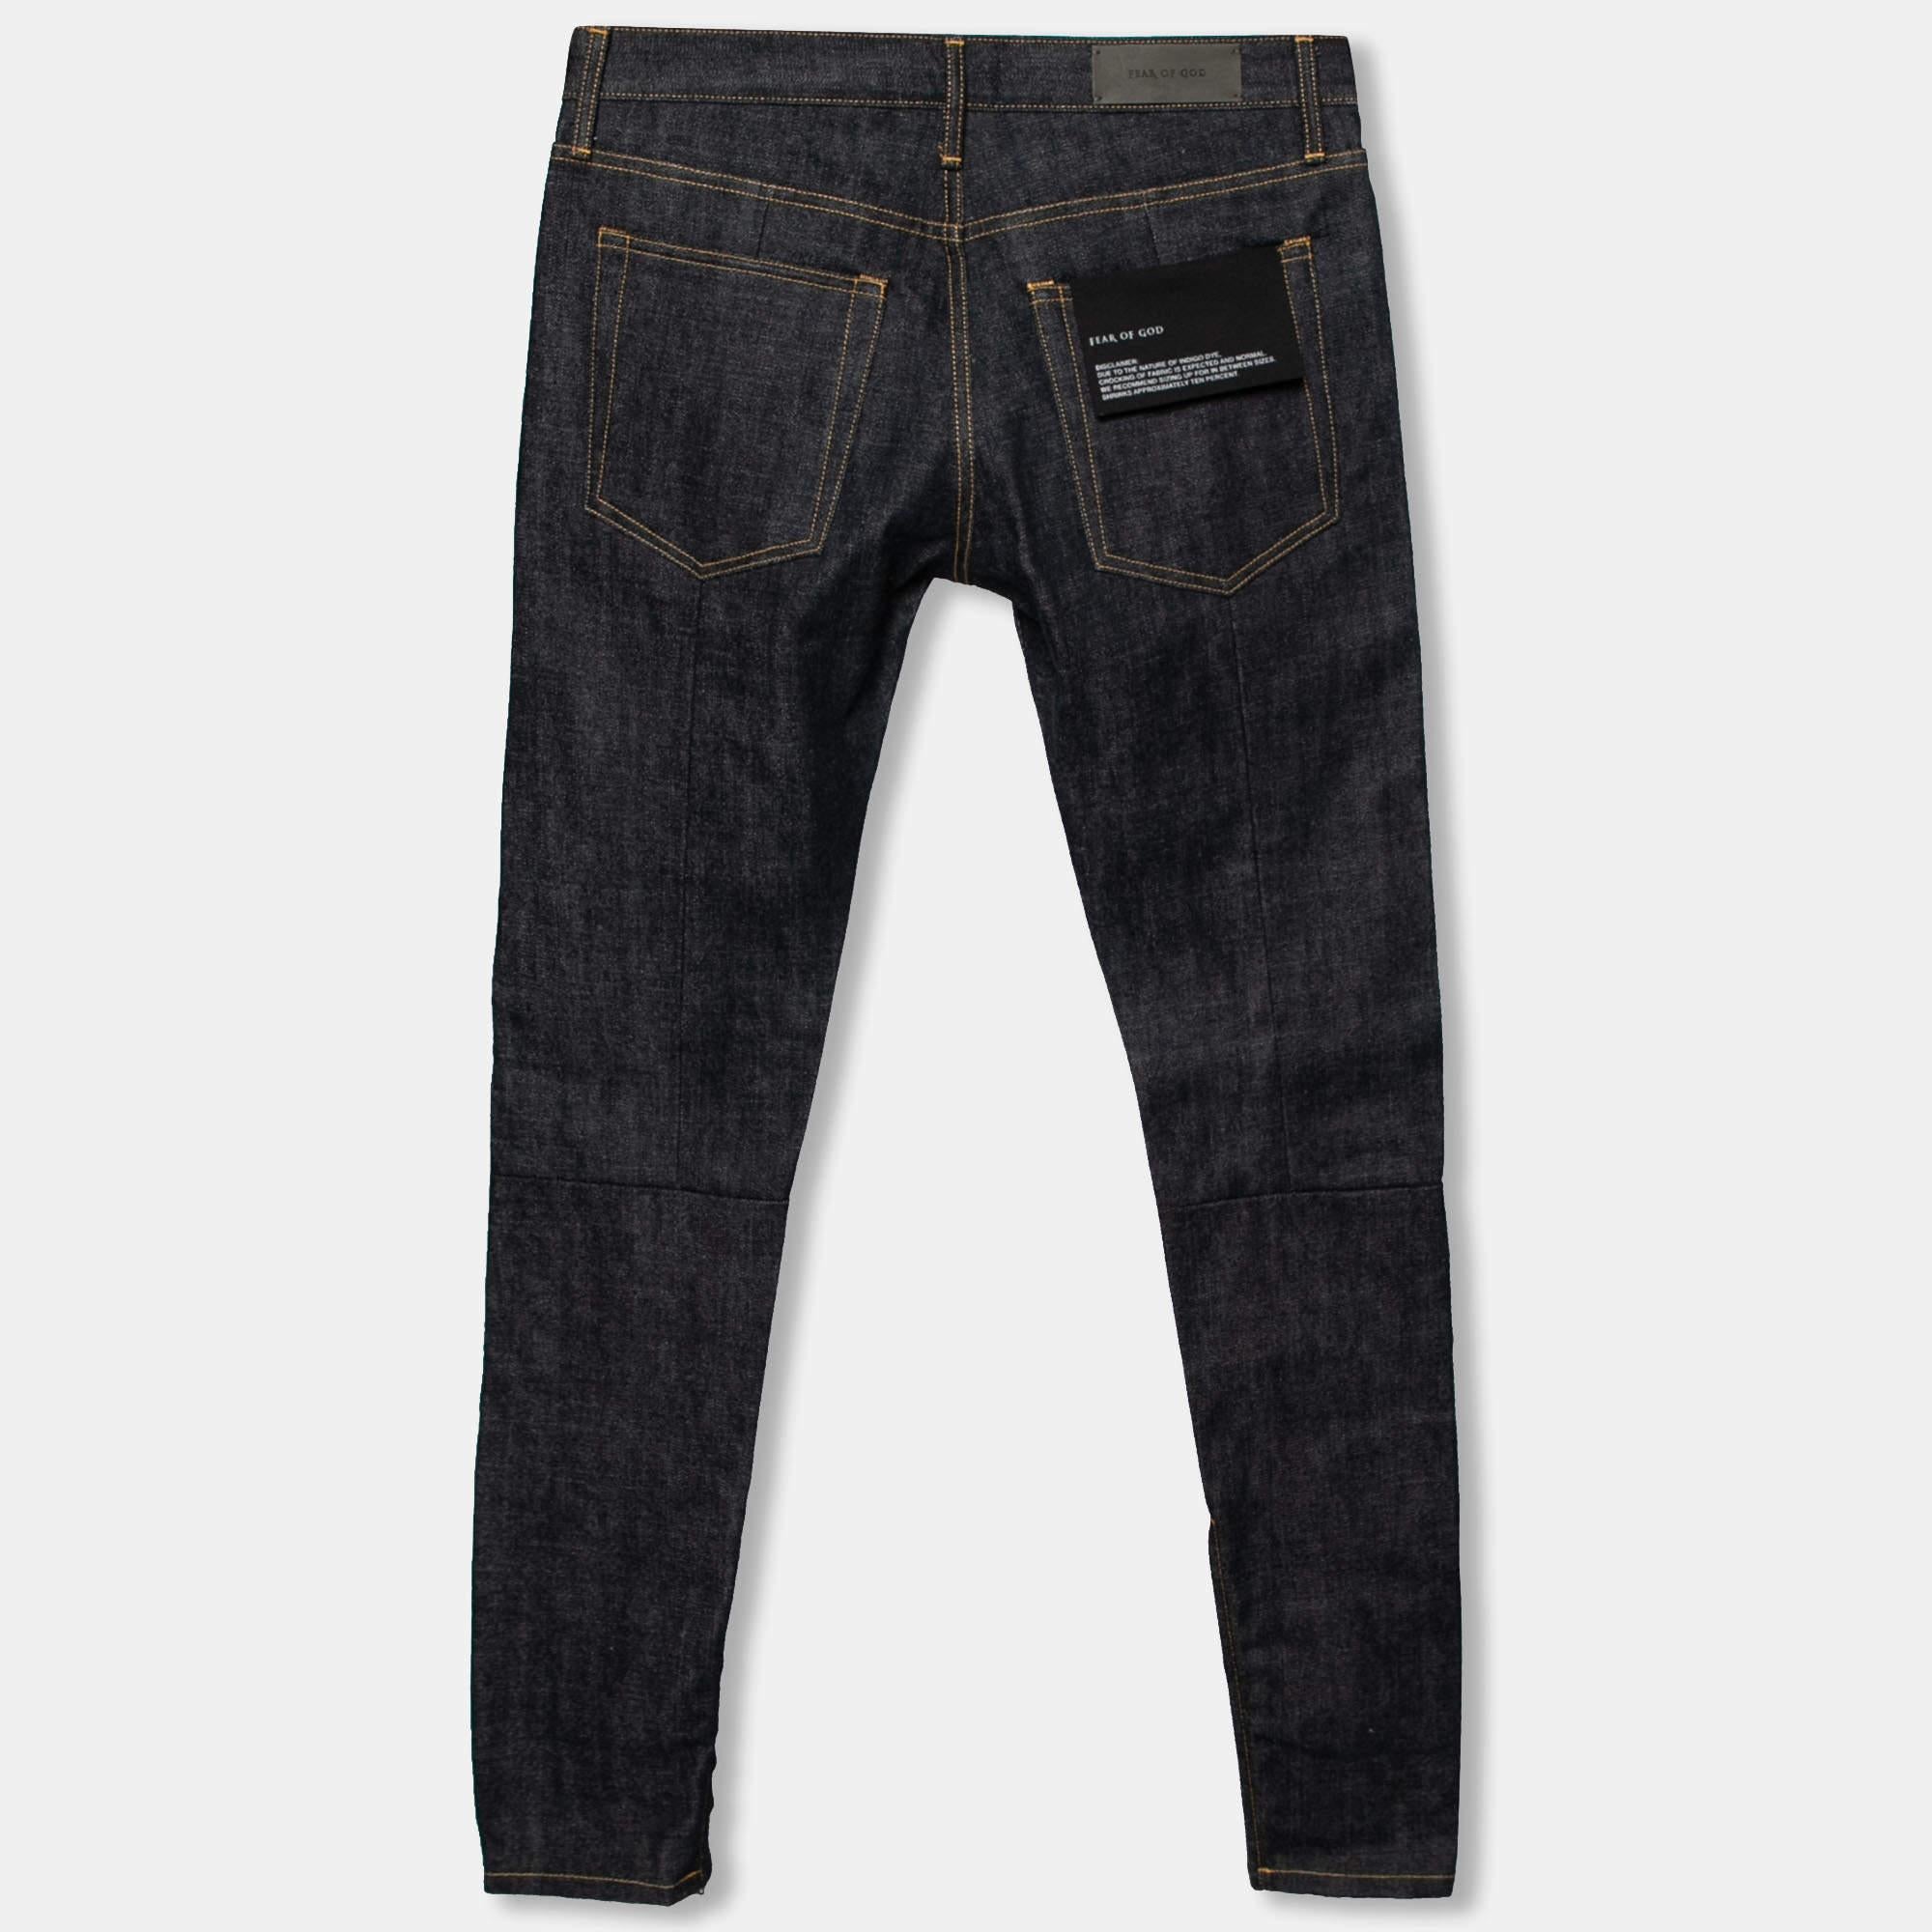 Fear of God vous propose ce jean super cool et confortable à porter régulièrement. Cette paire de jeans est confectionnée en coton bleu marine dans un style ajusté et est agrémentée de poches et d'ourlets zippés.

Comprend : Étiquette de marque